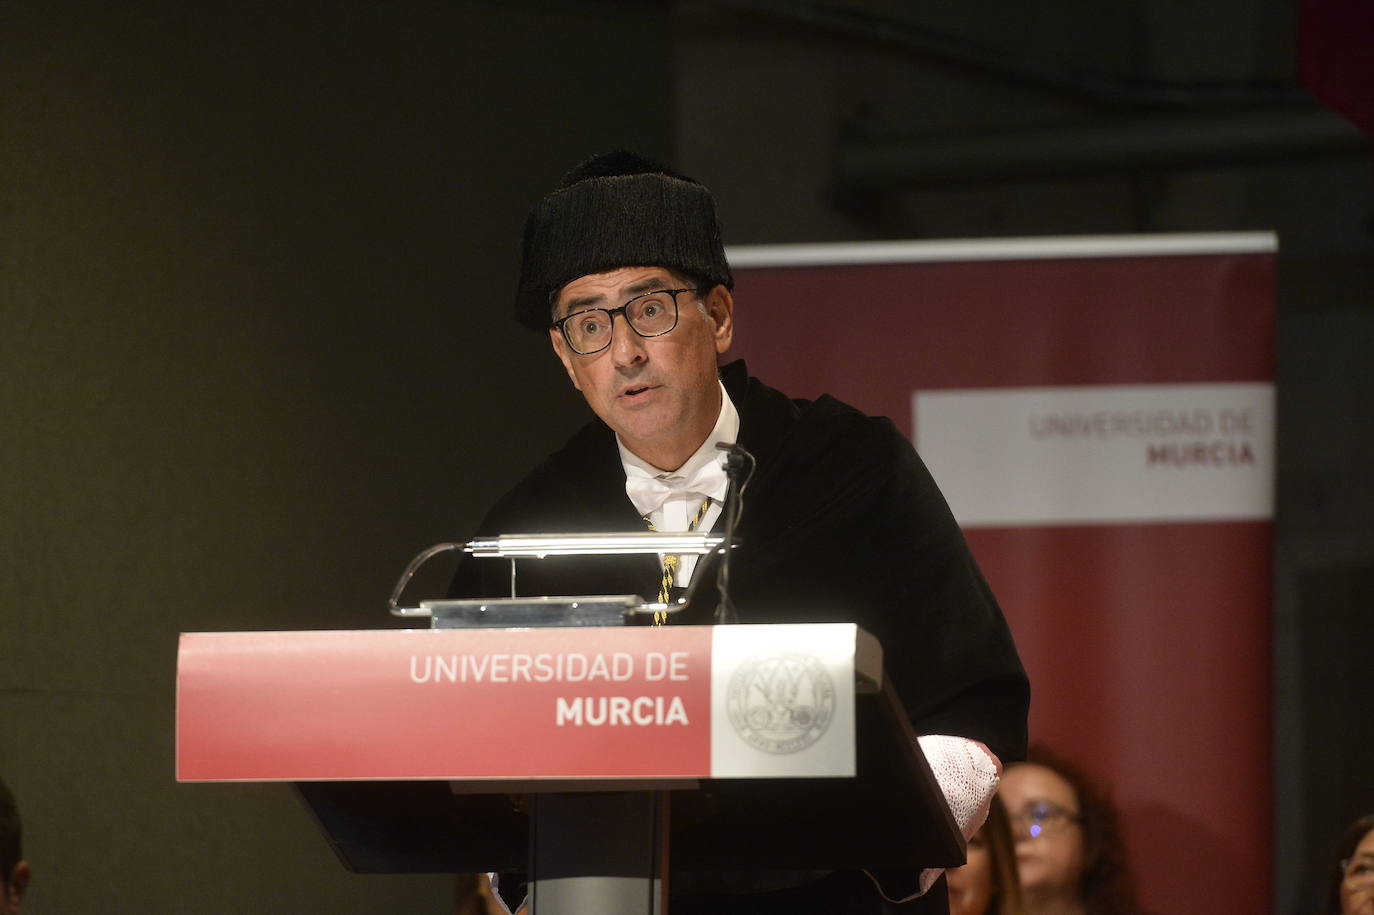 El catedrático de Óptica Pablo Artal, quien pronunció la lección magistral en acto de apertura de las universidades públicas, denuncia el envejecimiento de las plantillas investigadoras